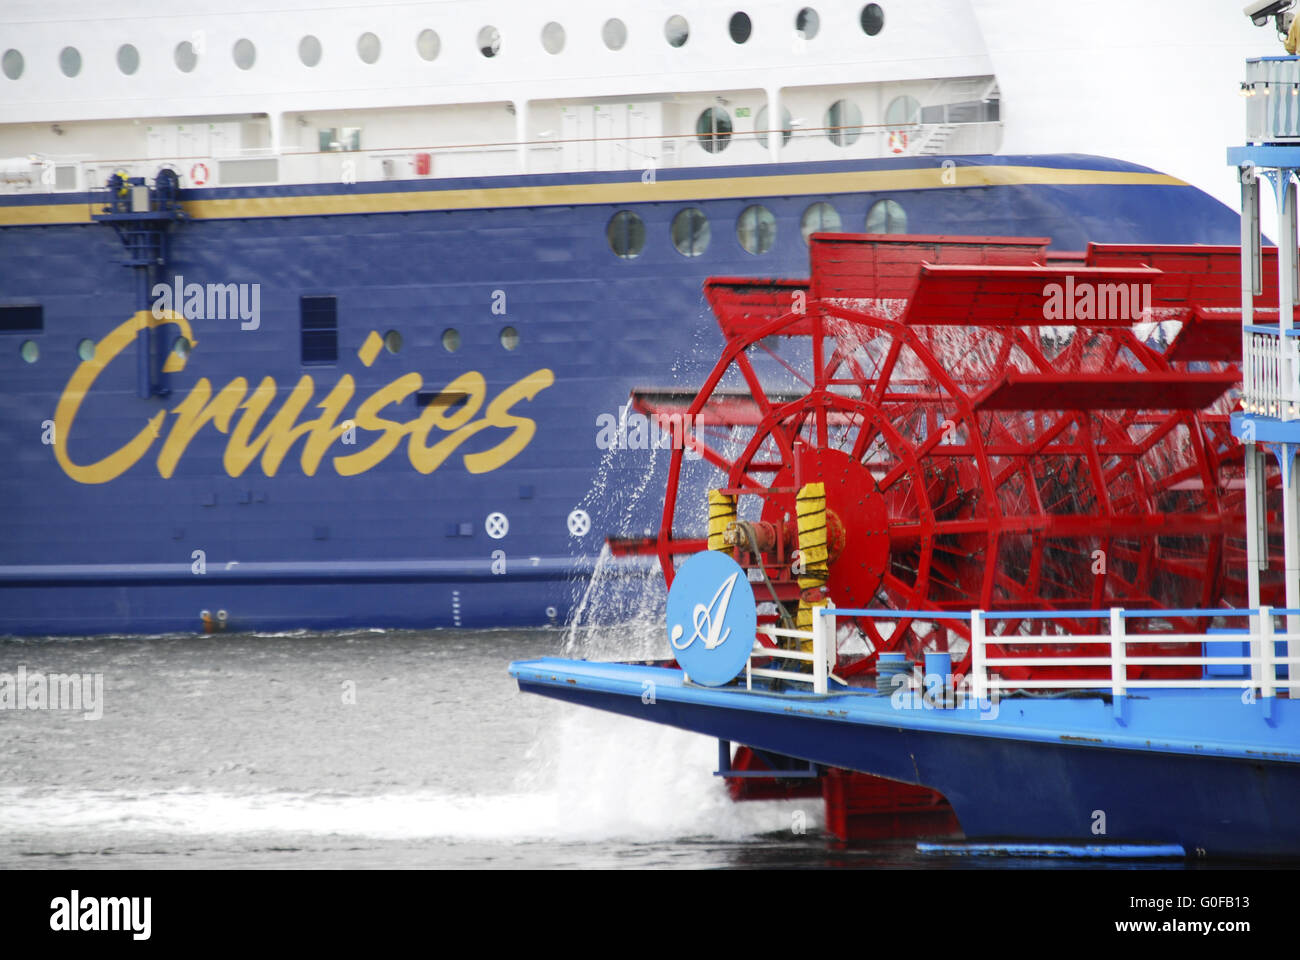 Paddle Wheel Steamer in Kiel, Germany Stock Photo